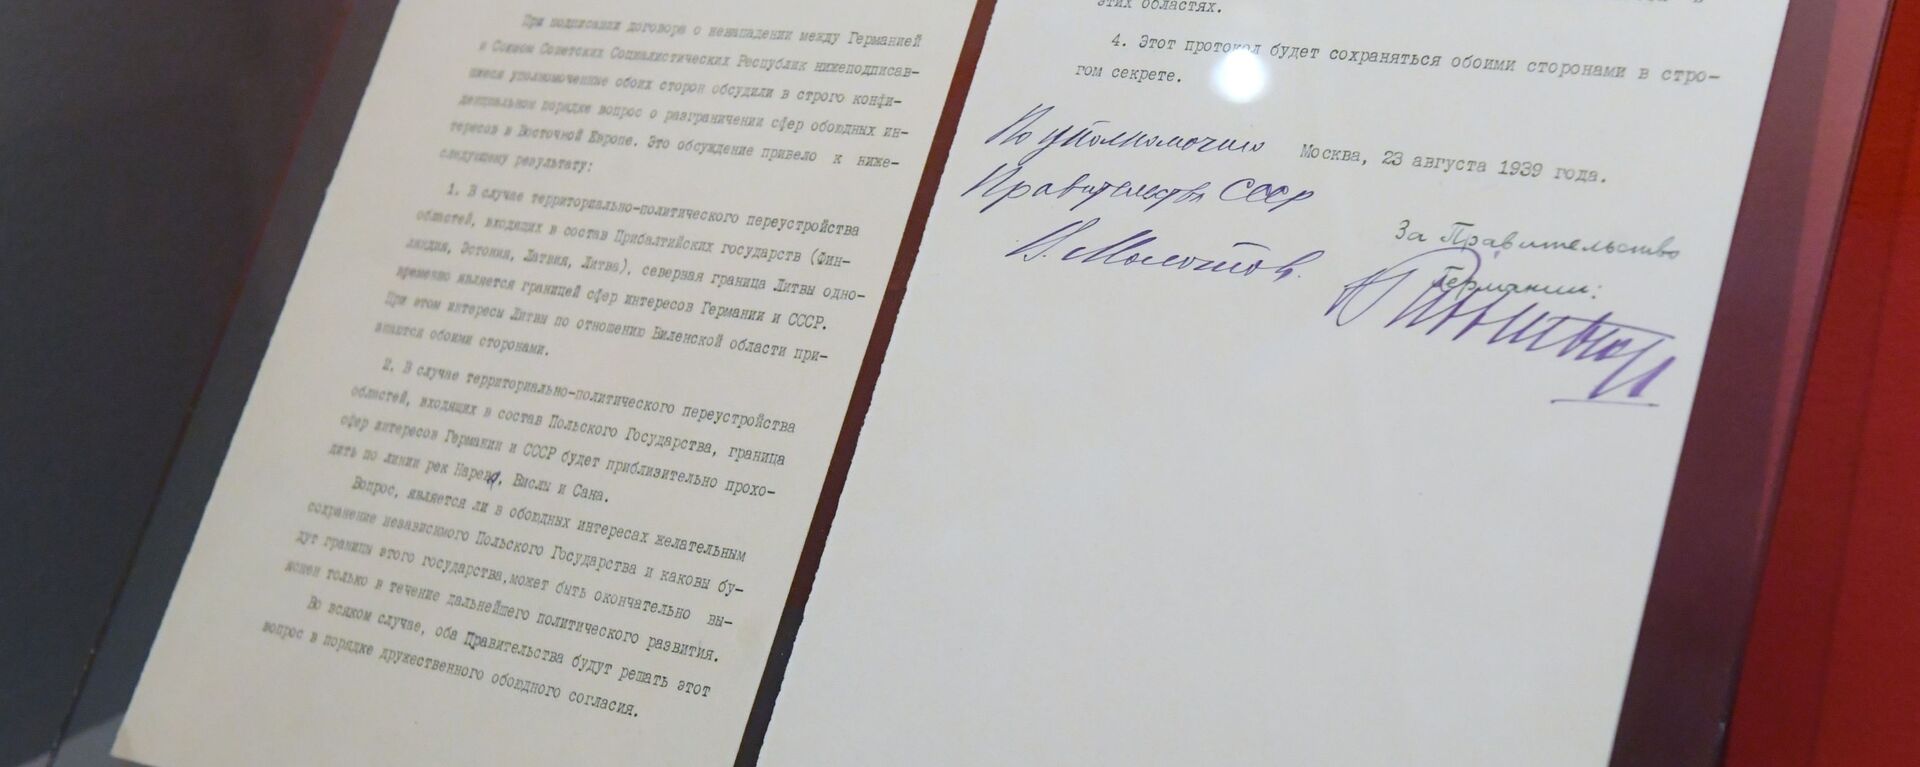 Секретный дополнительный протокол к договору о ненападении между Германией и Советским союзом - Sputnik Латвия, 1920, 22.08.2019